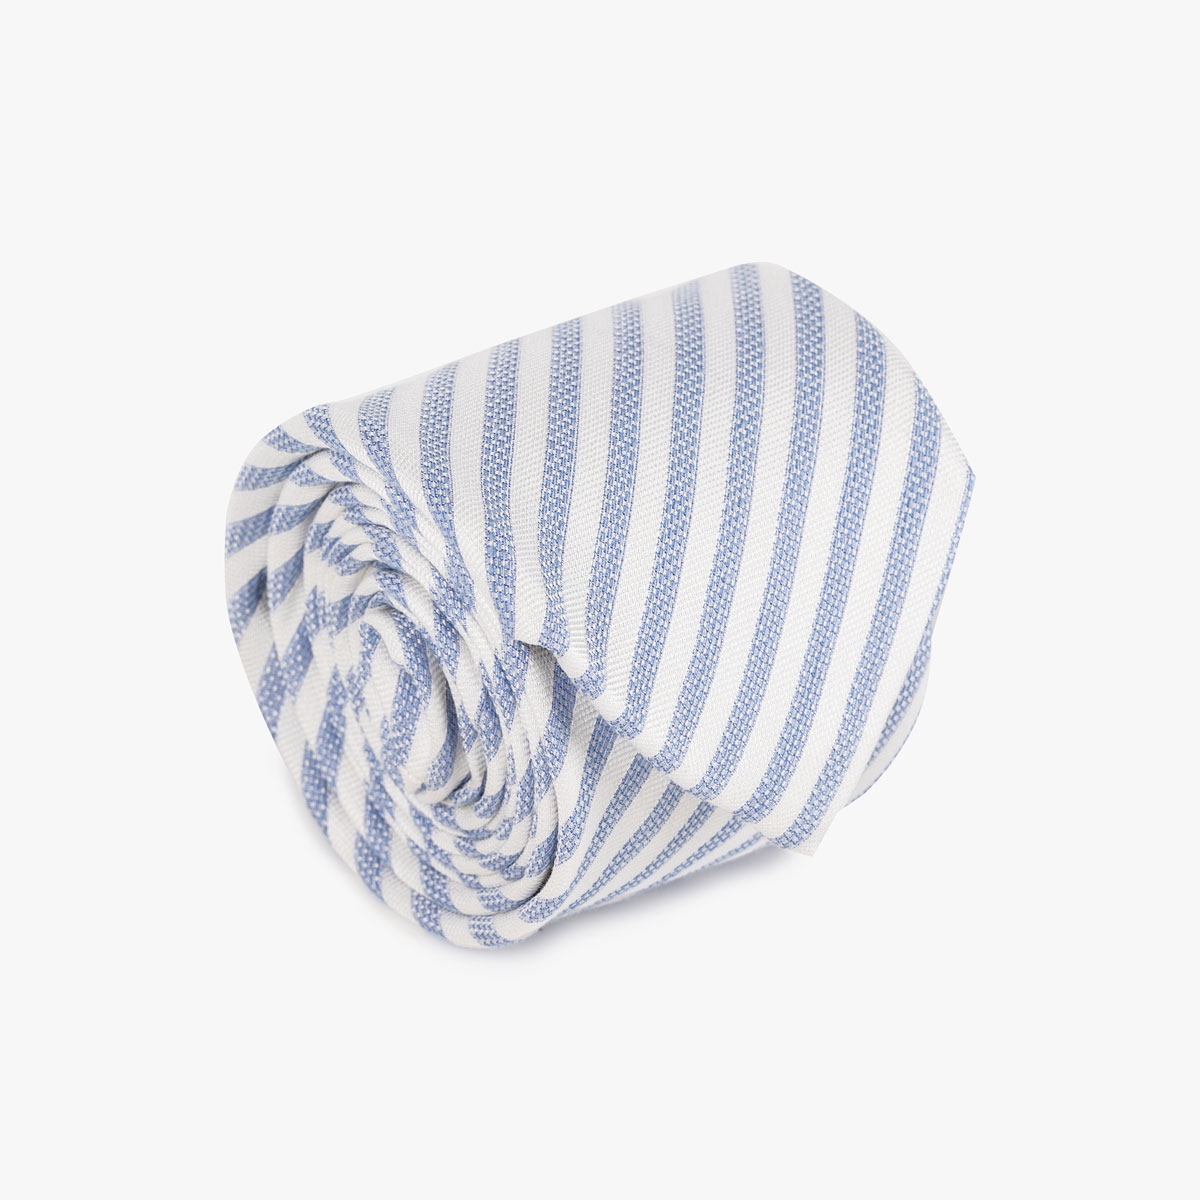 Krawatte mit feinen Streifen in hellblau weiß